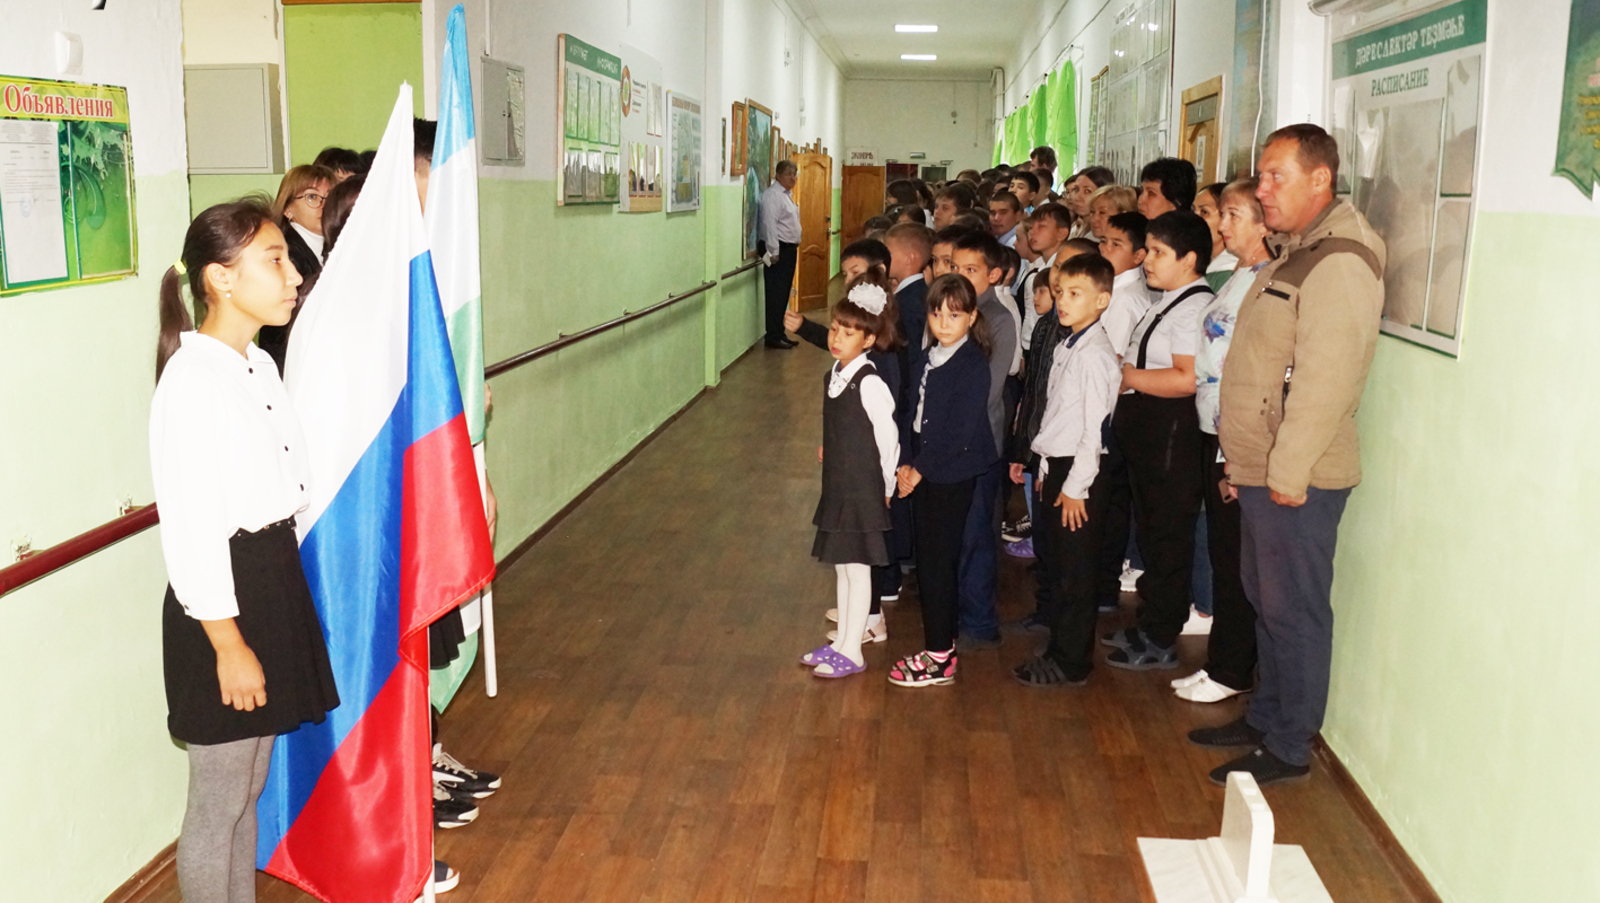 Игорь Хлопотов  Каждый понедельник начинается с выноса флага, исполнения гимна и разговоров о важном